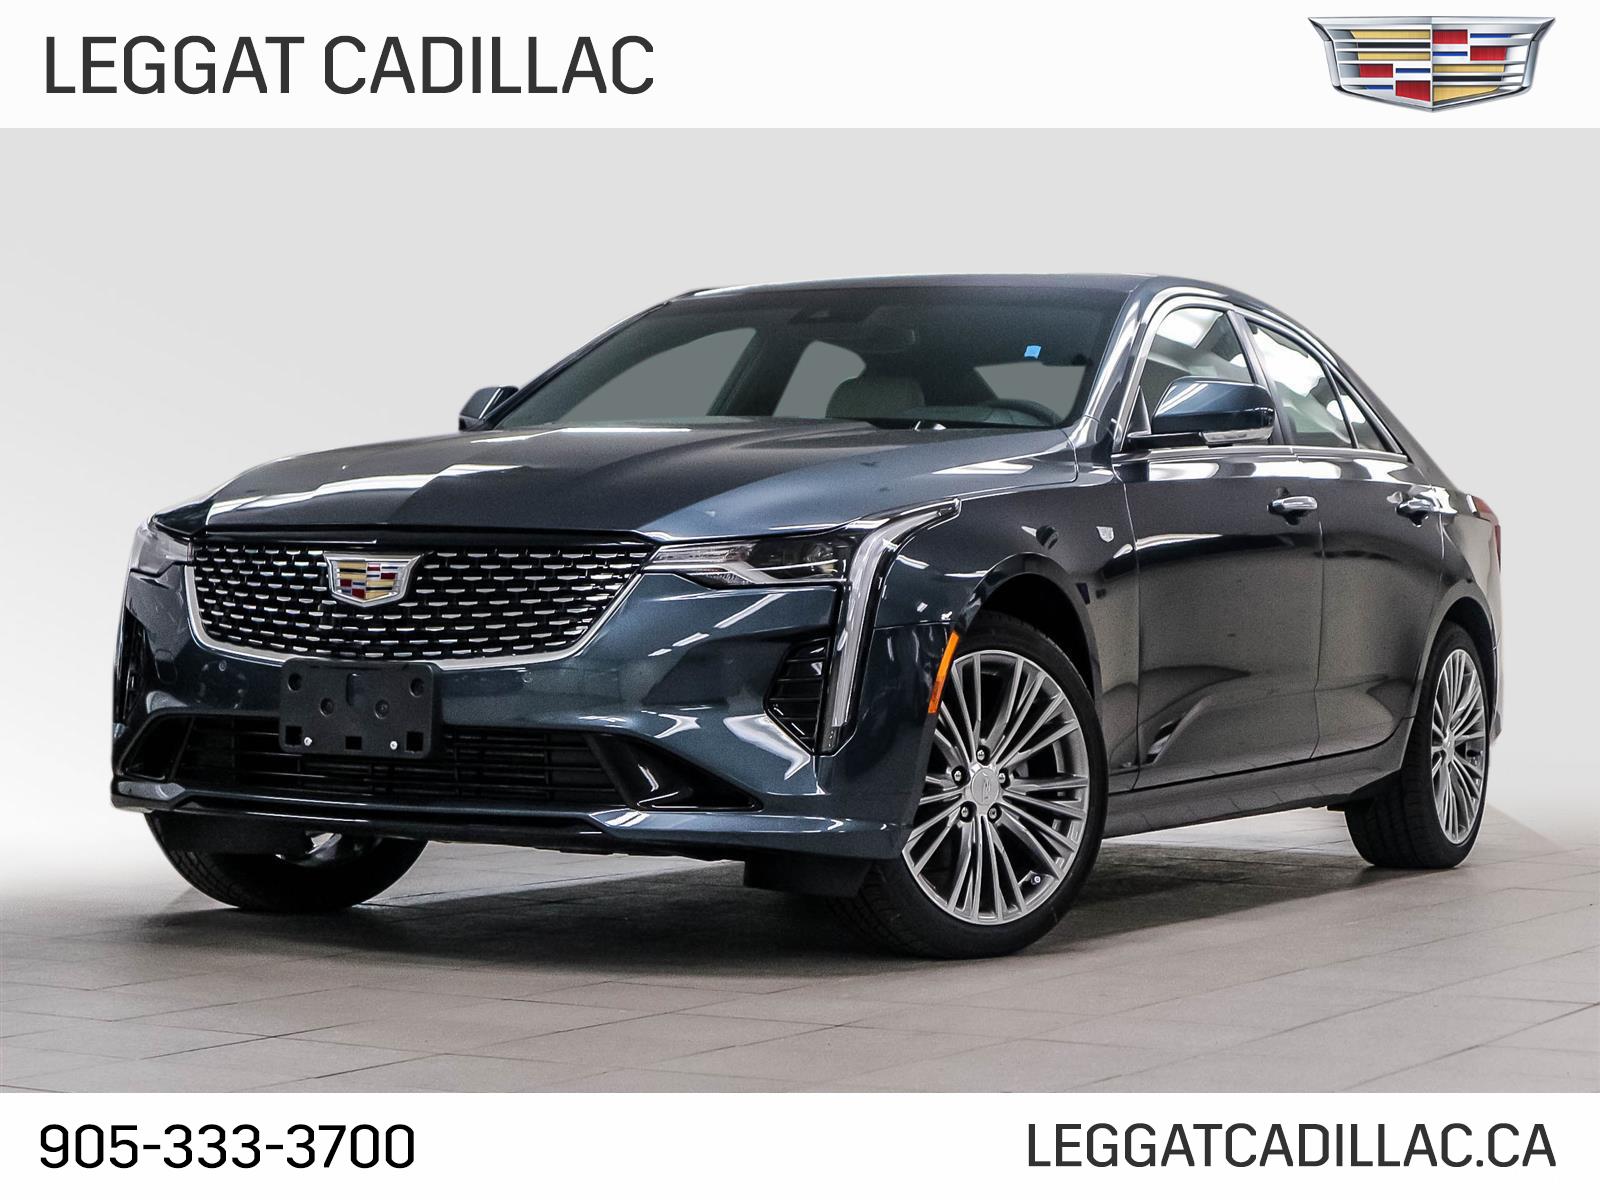 2022 Cadillac CT4 Premium Luxury - 14km